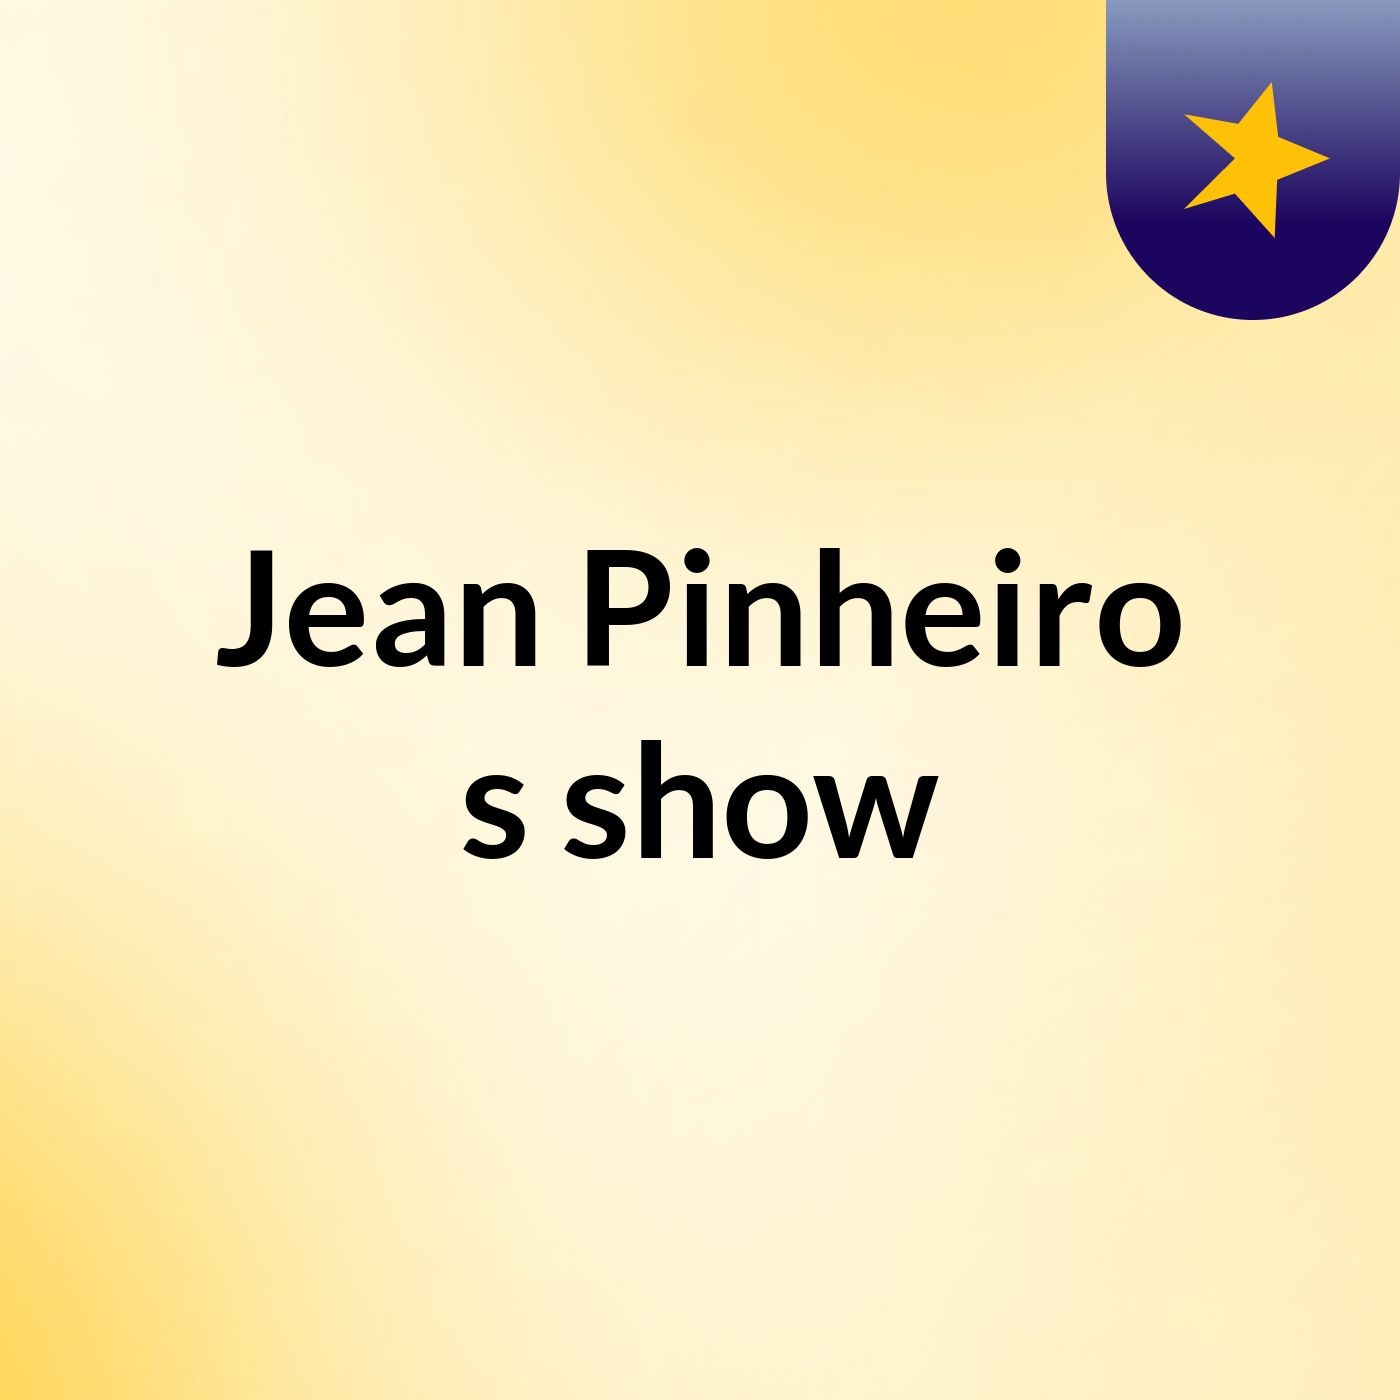 Jean Pinheiro's show